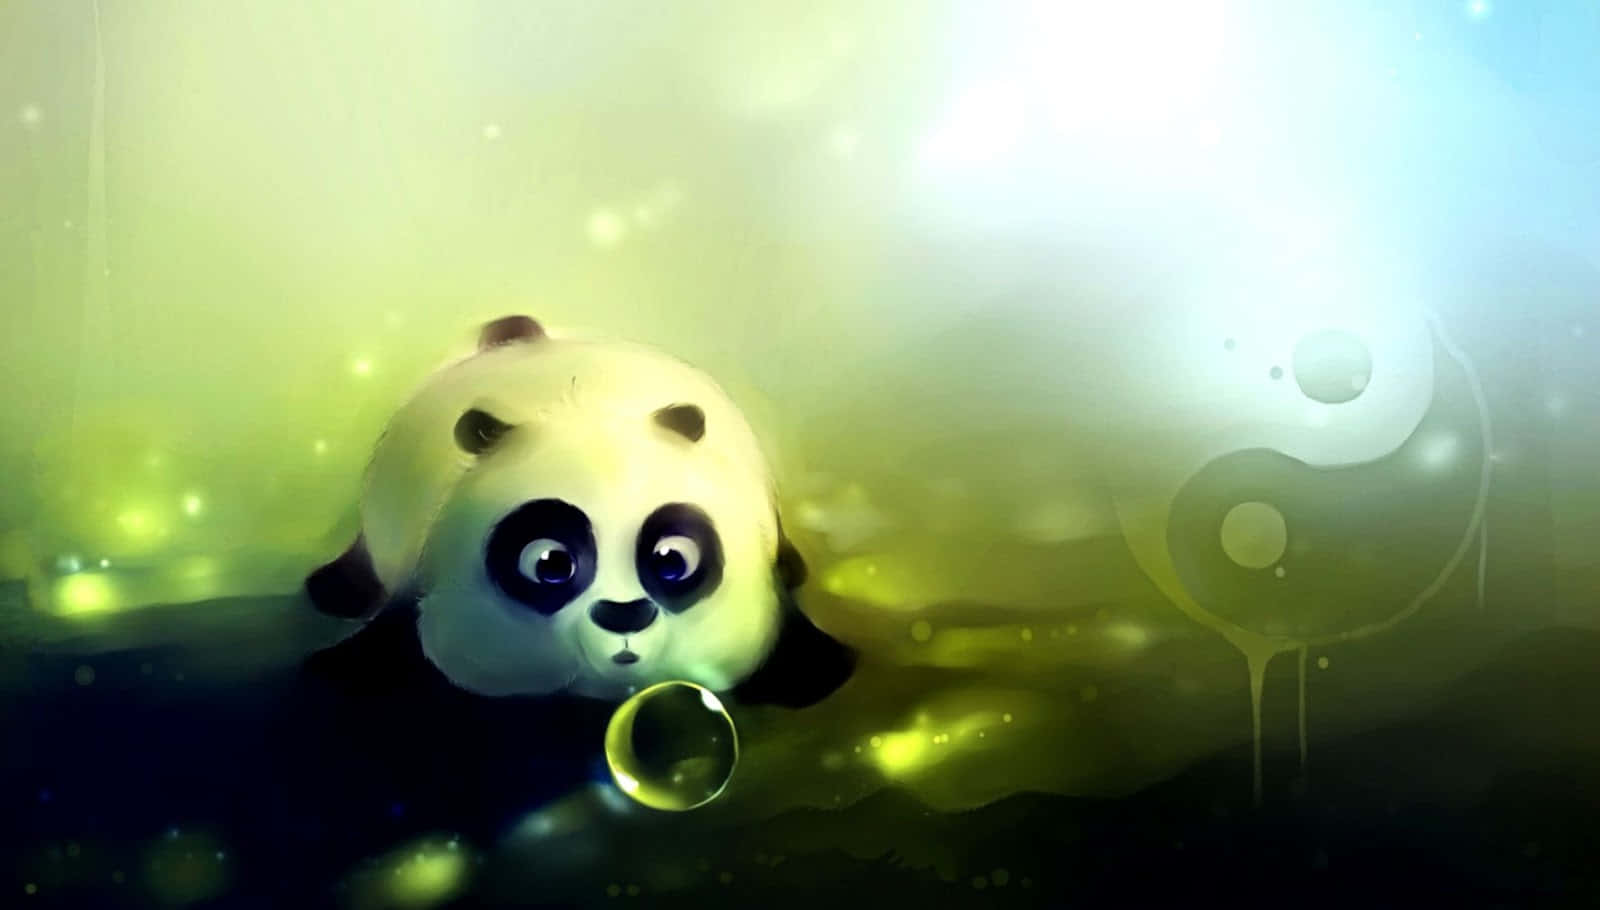 Black Green Cute Cartoon Panda Wallpaper